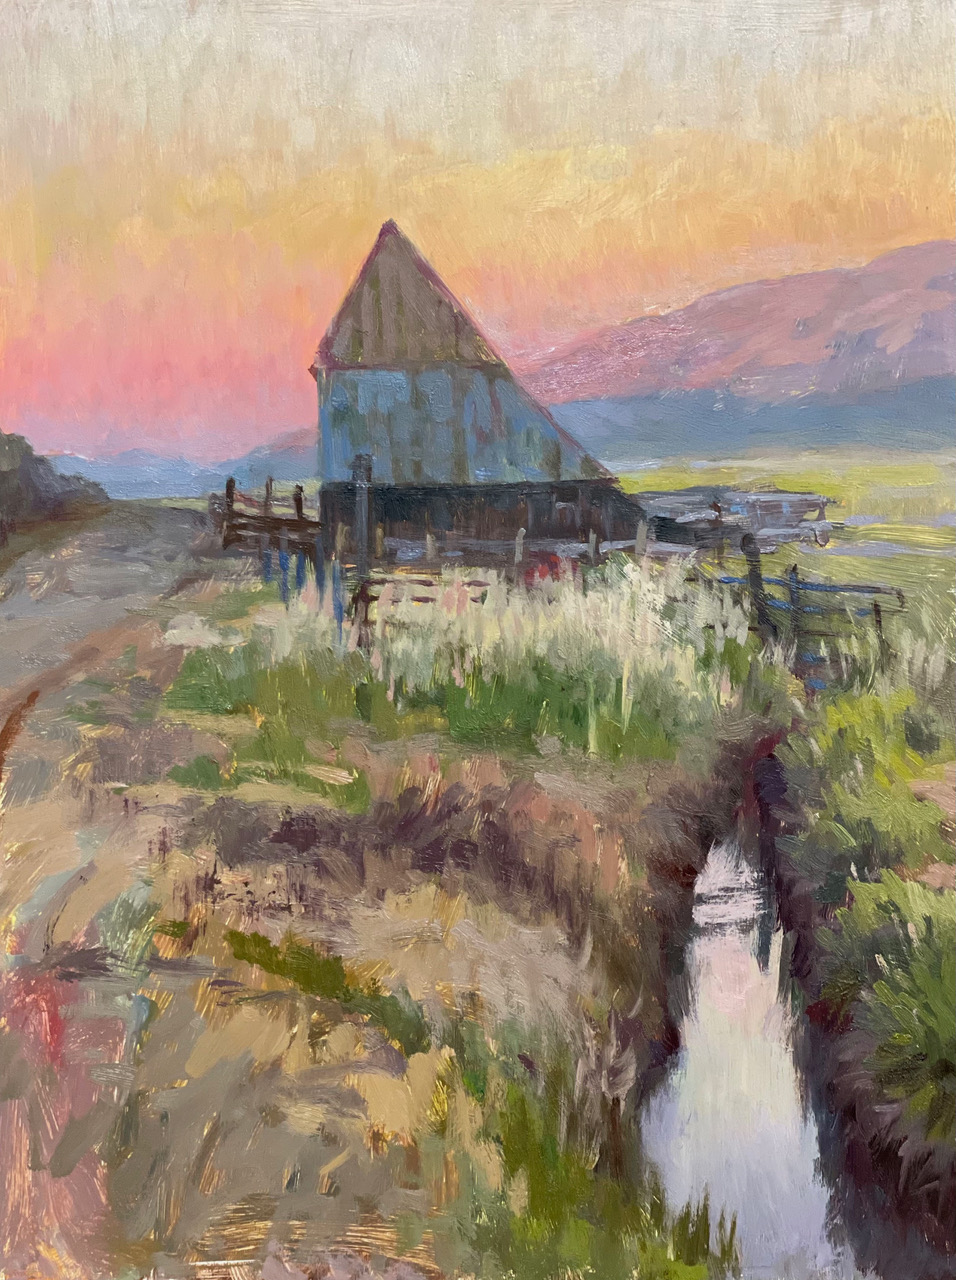 Inga's painting of an odd barn